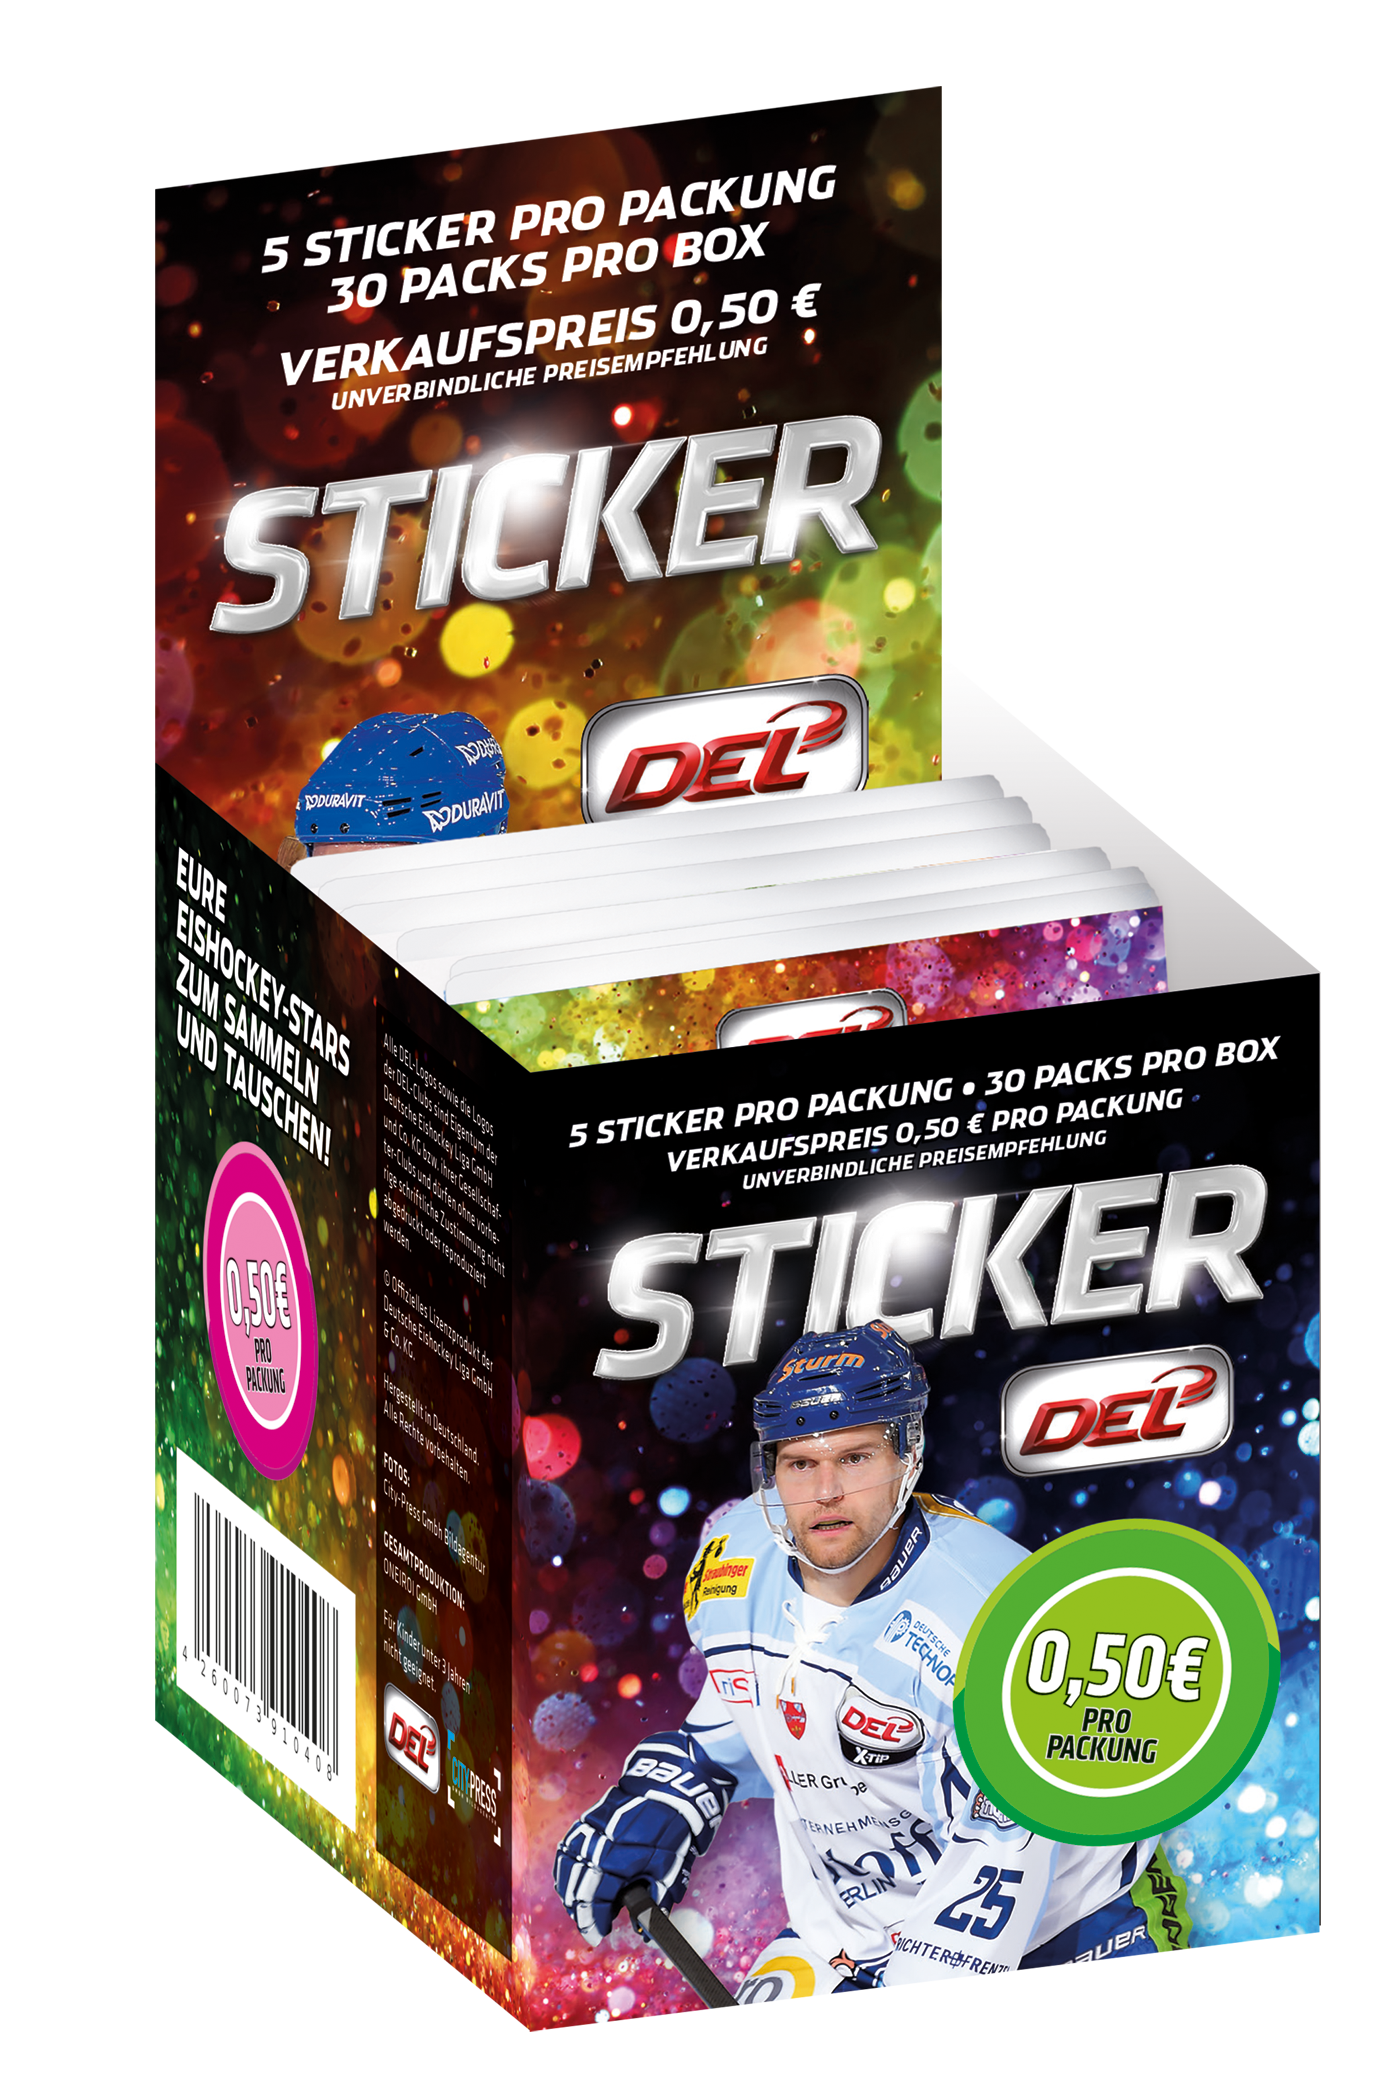 DEL Sticker Box 2015/2016